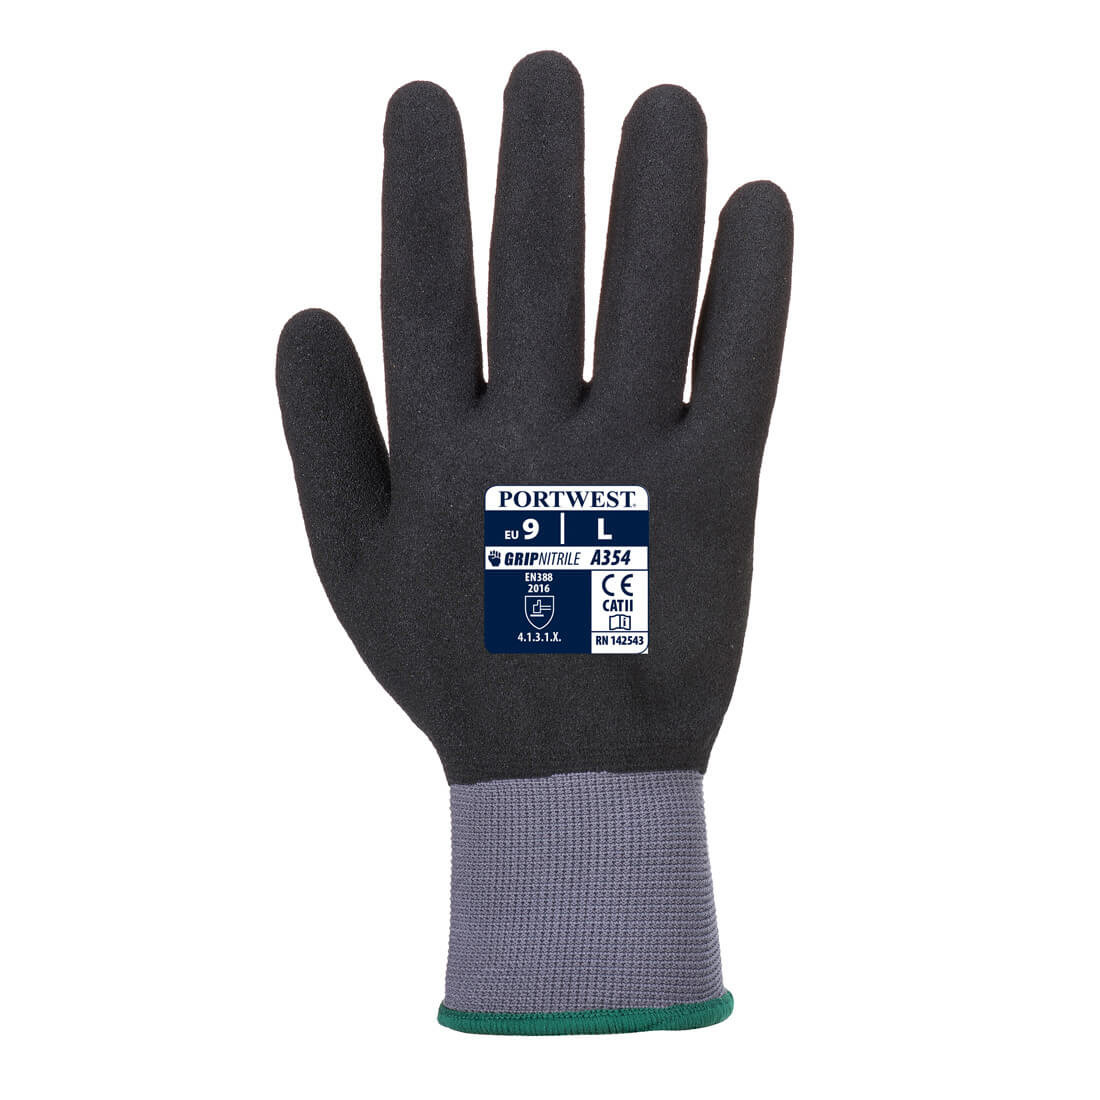 DermiFlex Ultra Pro Glove - PU/Nitrile Foam - Personal protection